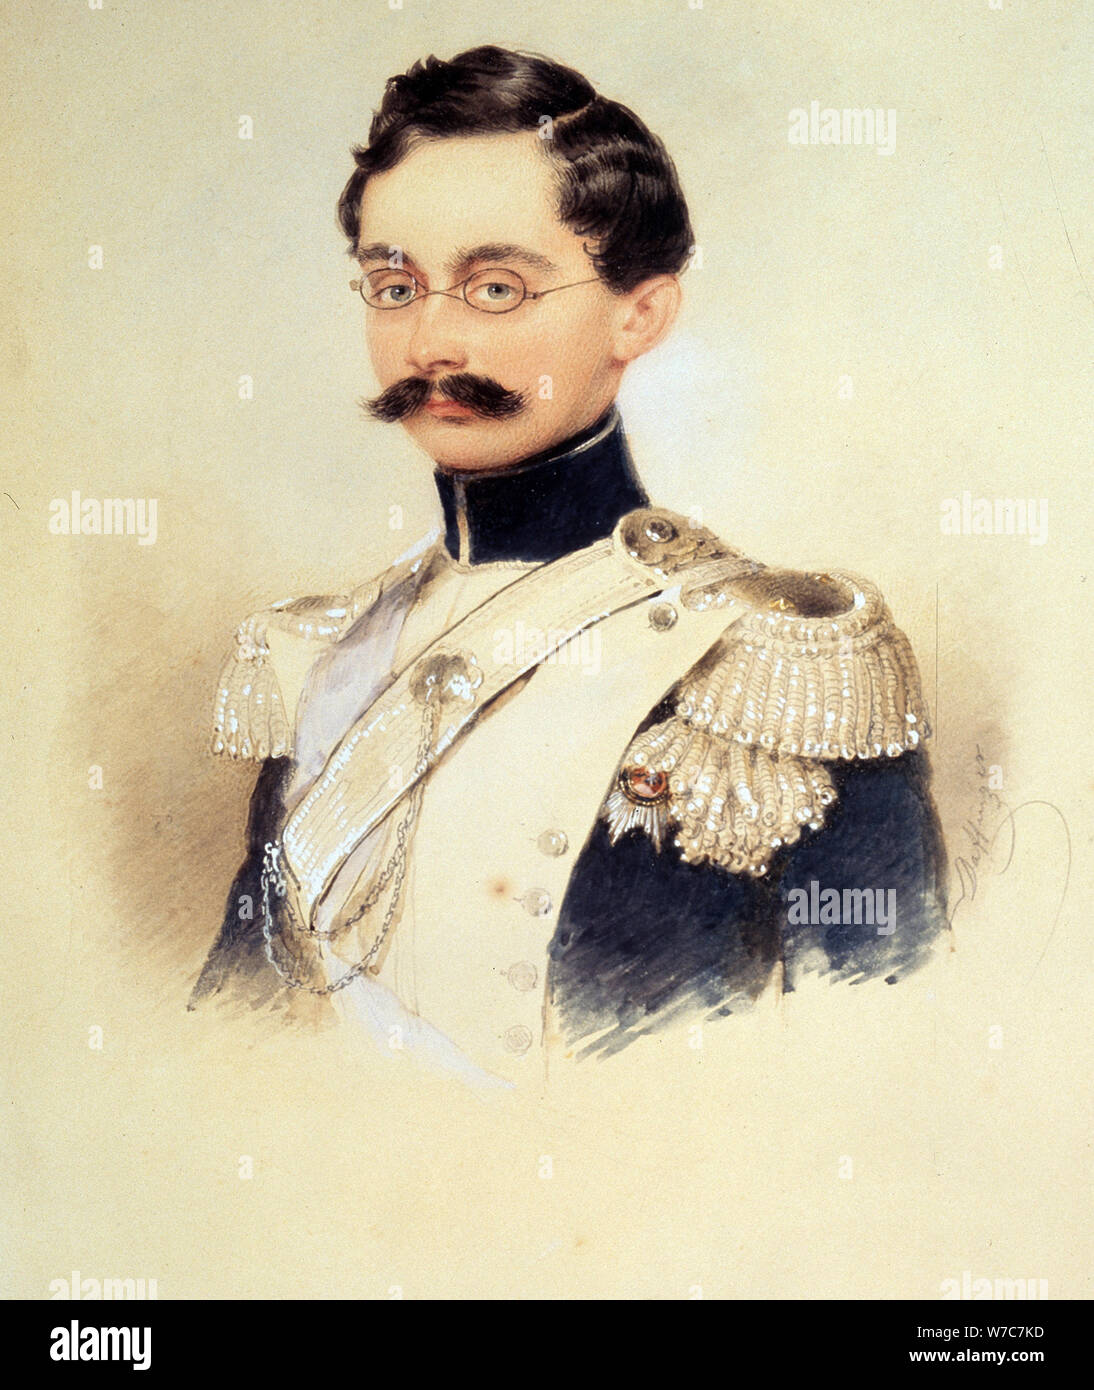 Portrait of Adolphe I, Duke of Nassau, Grand Duke of Luxembourg (1817-1905), 1840s. Artist: Daffinger, Moritz Michael (1790-1849) Stock Photo